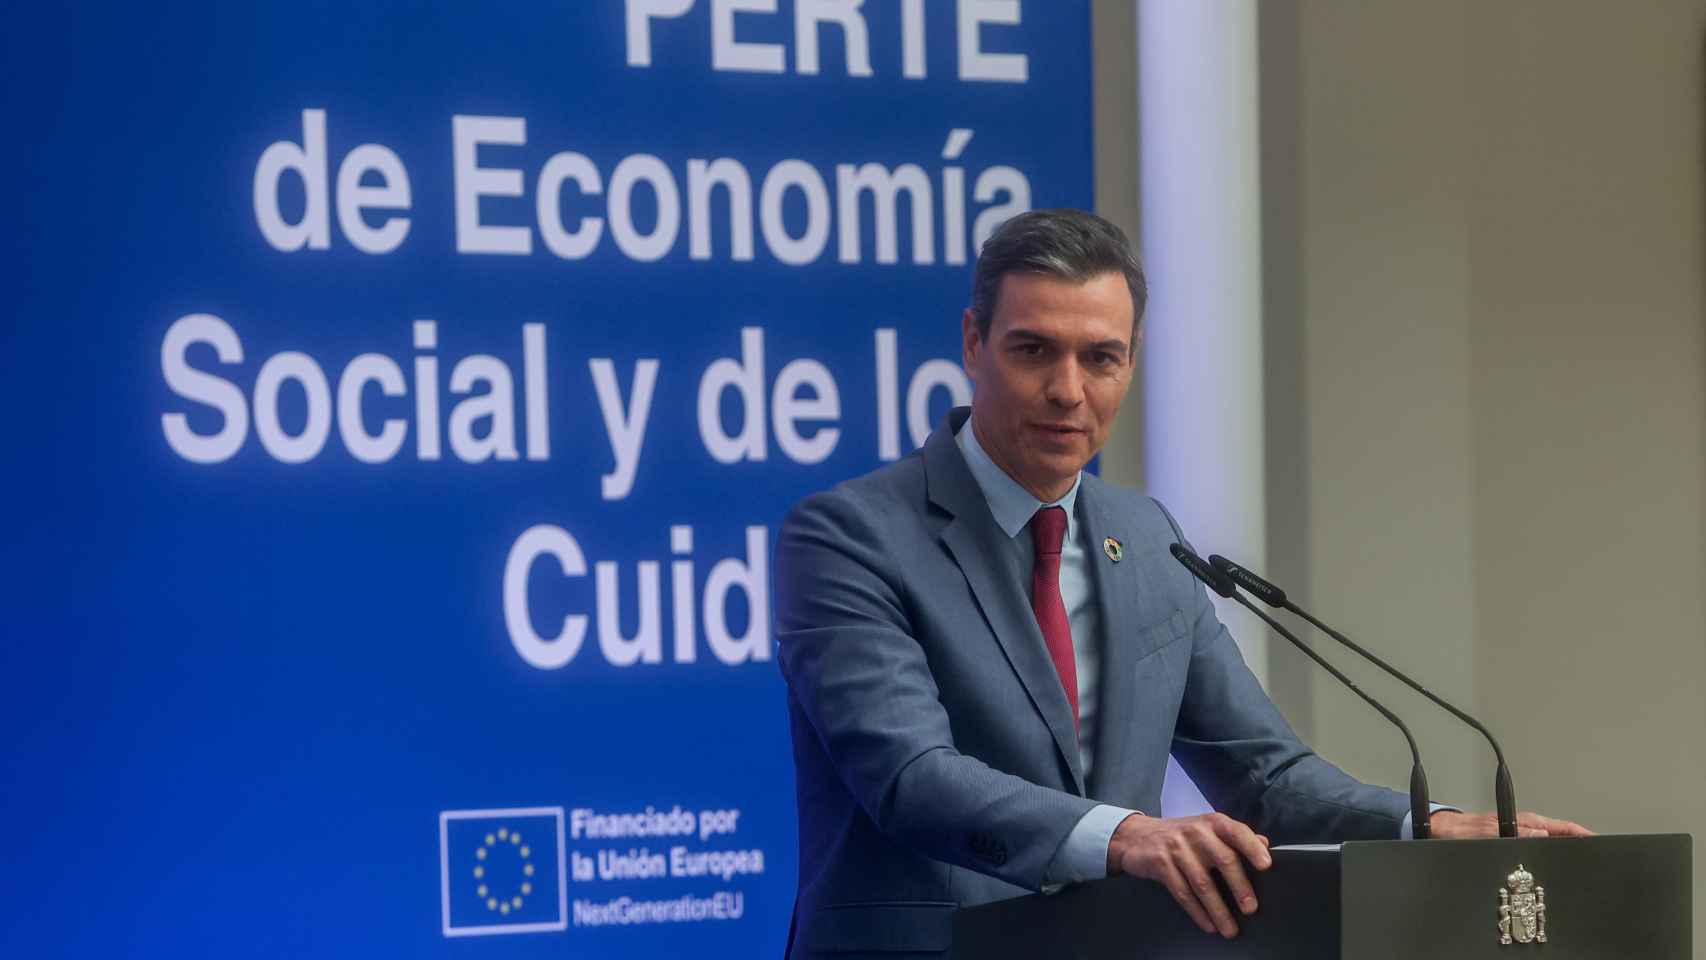 El presidente del Gobierno, Pedro Sánchez (i), a su llegada al acto de presentación del plan estratégico para la recuperación y transformación económica (PERTE) de Economía Social y de los Cuidados, en el Complejo de La Moncloa.